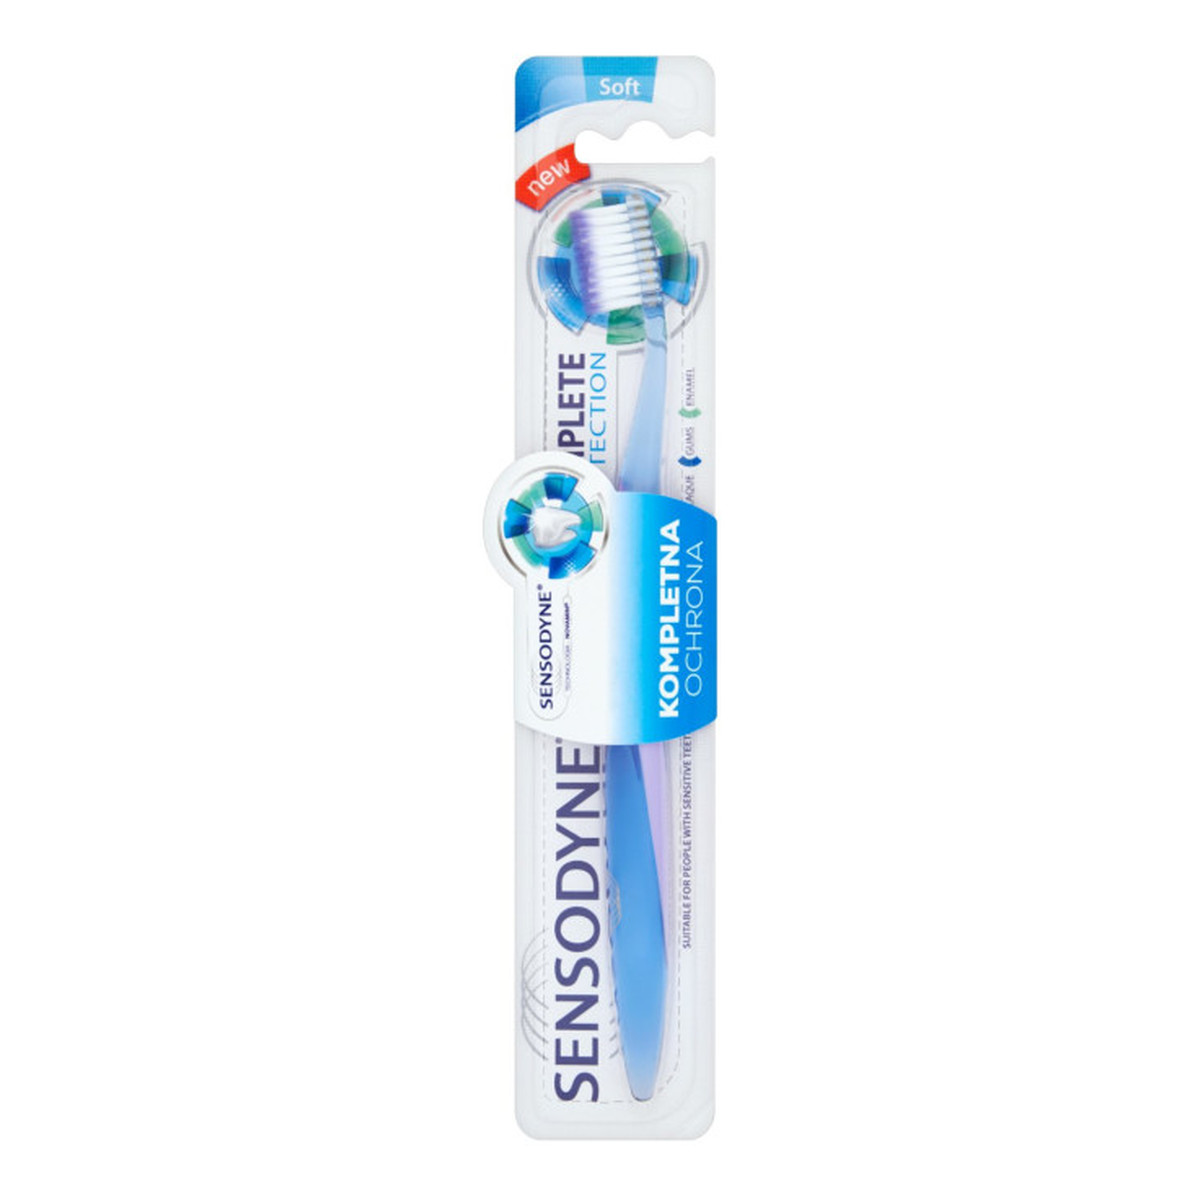 Sensodyne Soft Complete Protection Szczoteczka Do Zębów Miękka